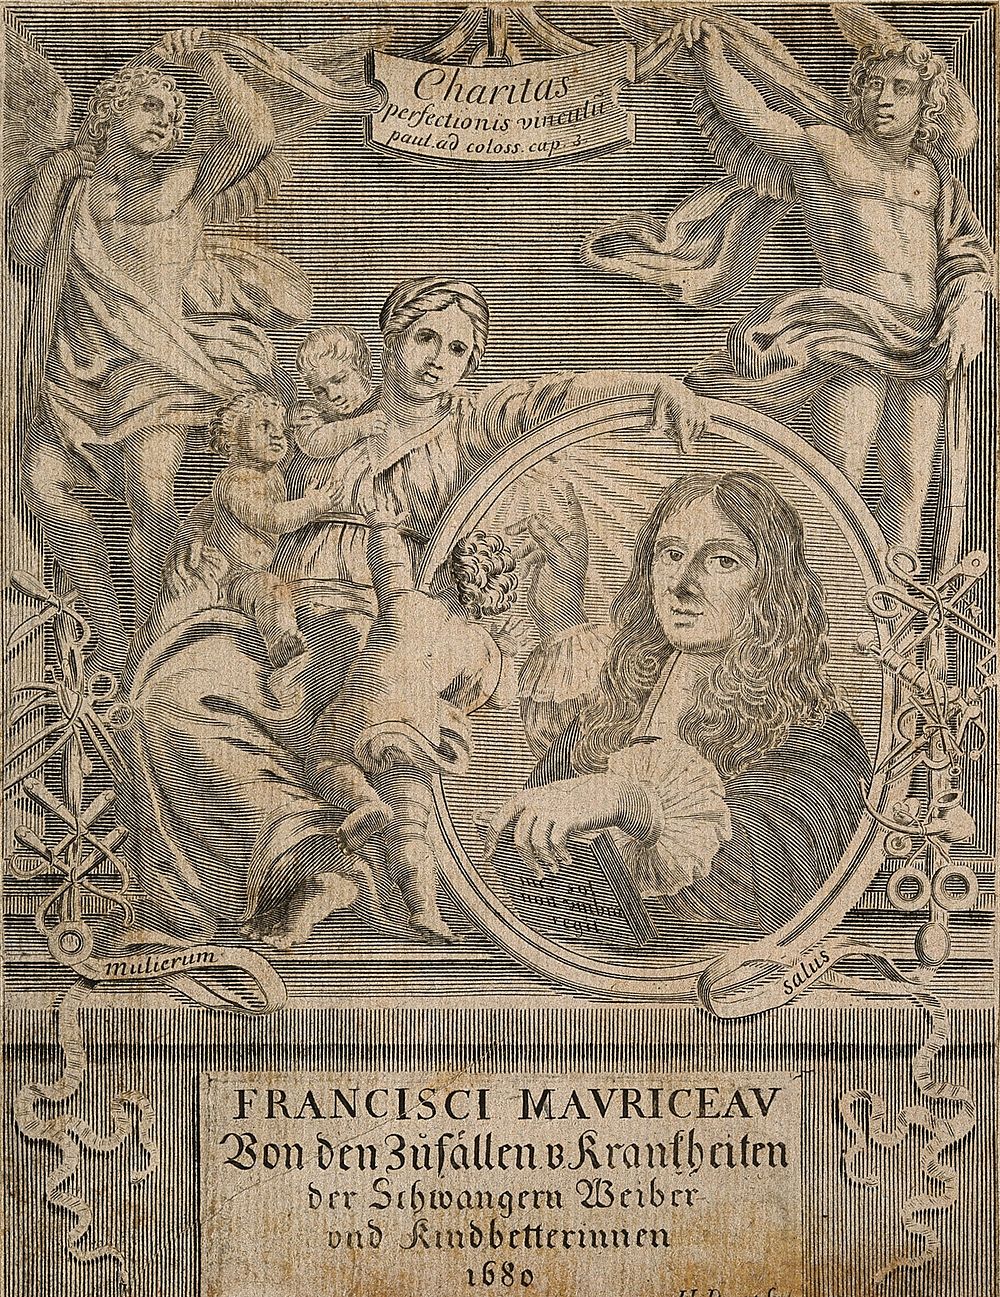 François Mauriceau. Line engraving by J. L. Durant, 1680.